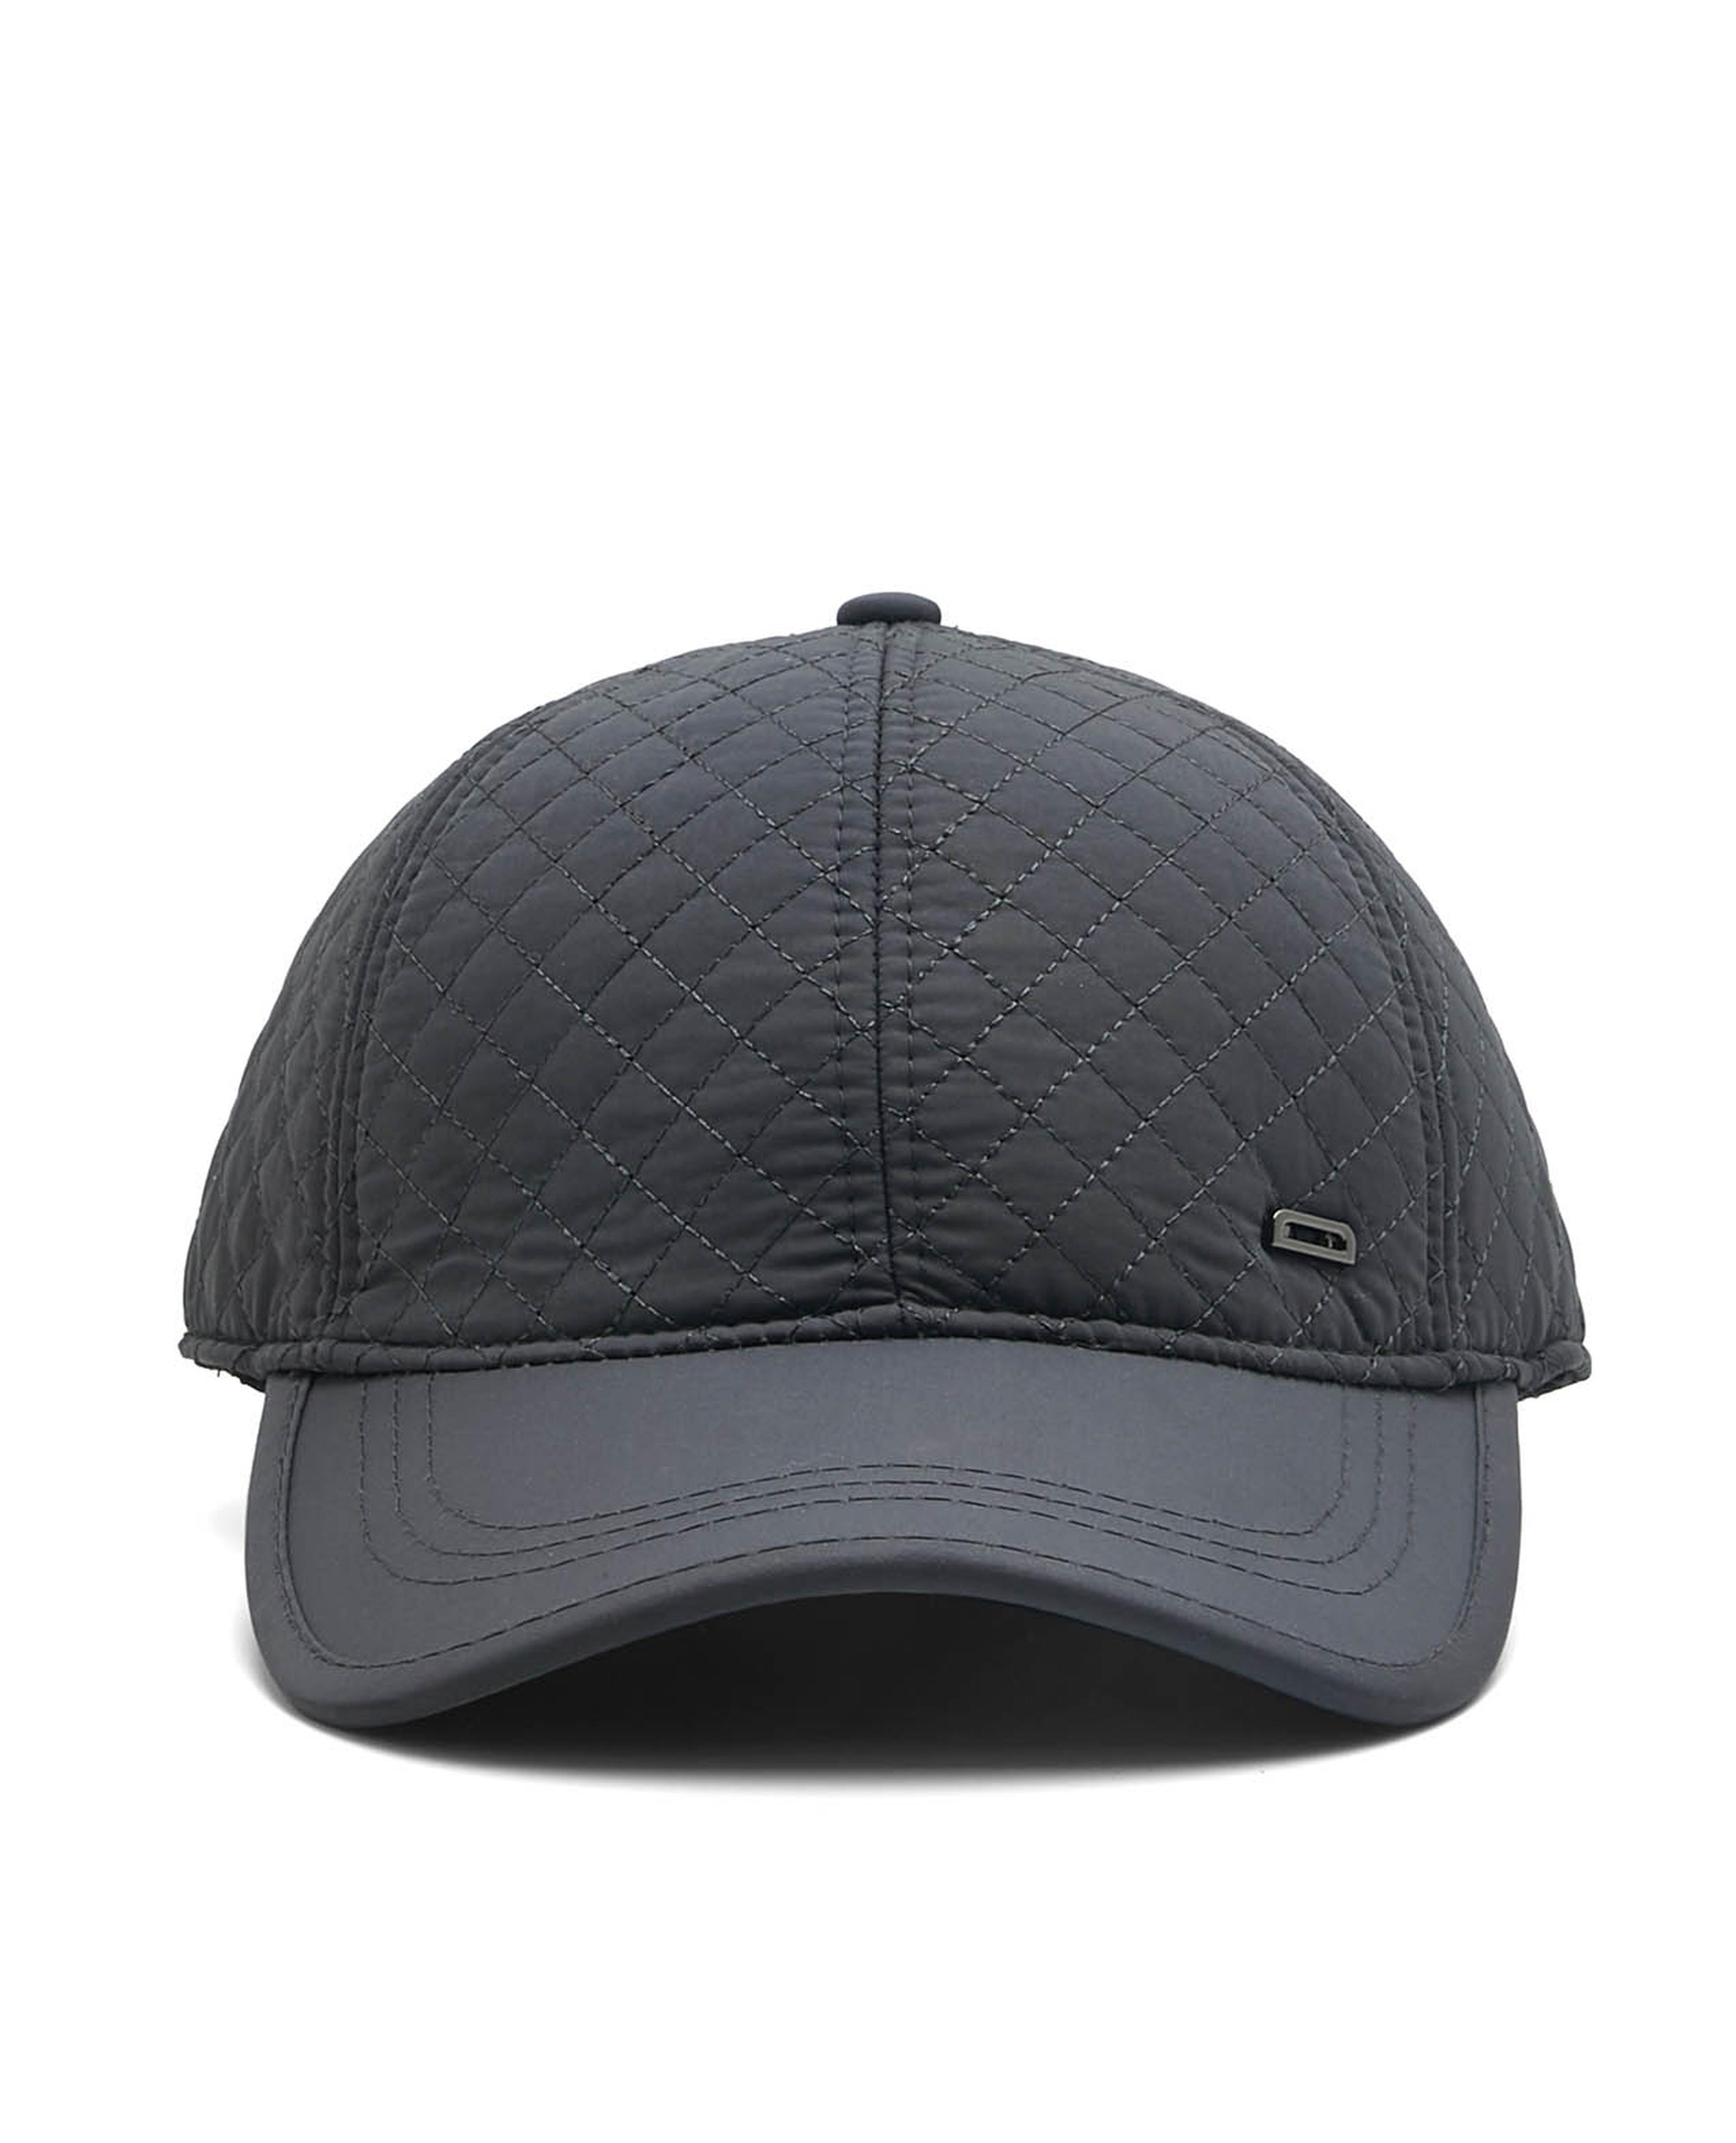 Caps & Hats - Shop Men Caps & Hats Online at best prices